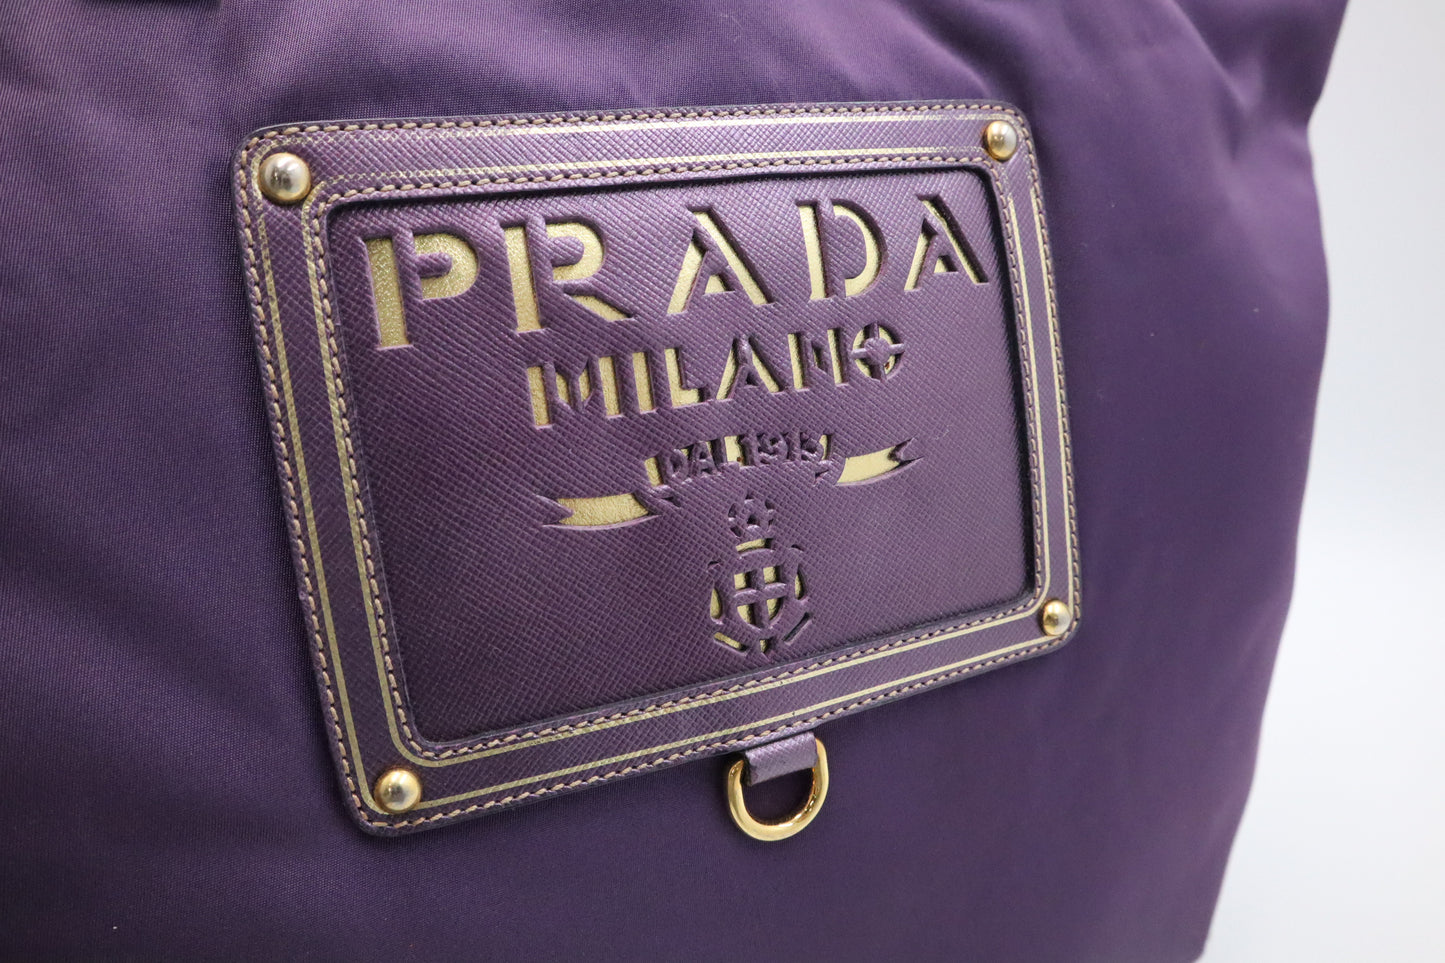 Prada Tote Bag in Purple Nylon